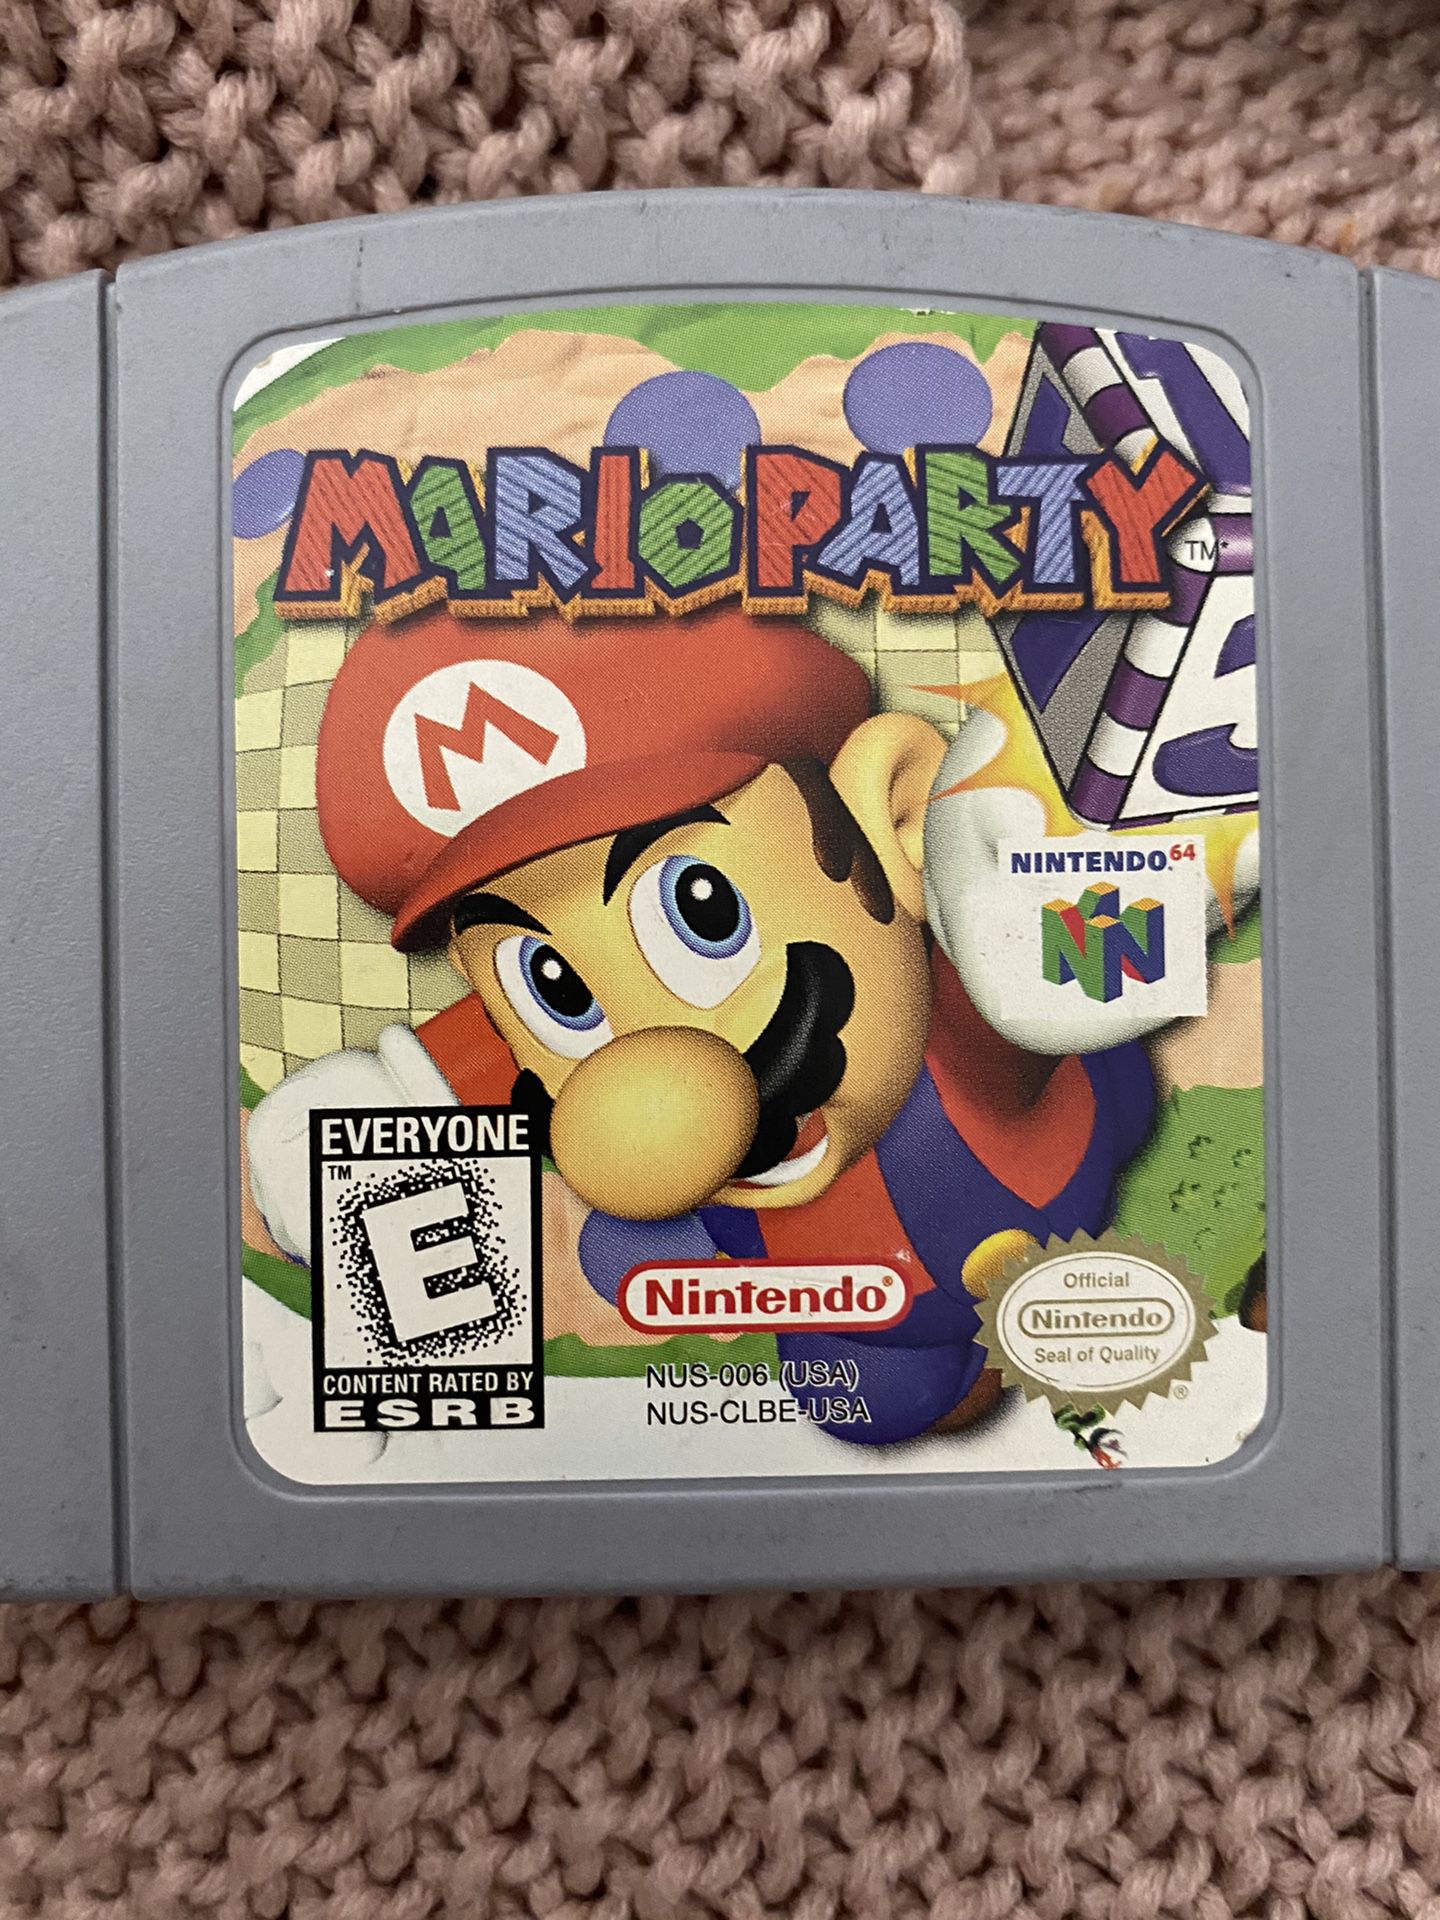 Mario party Nintendo 64